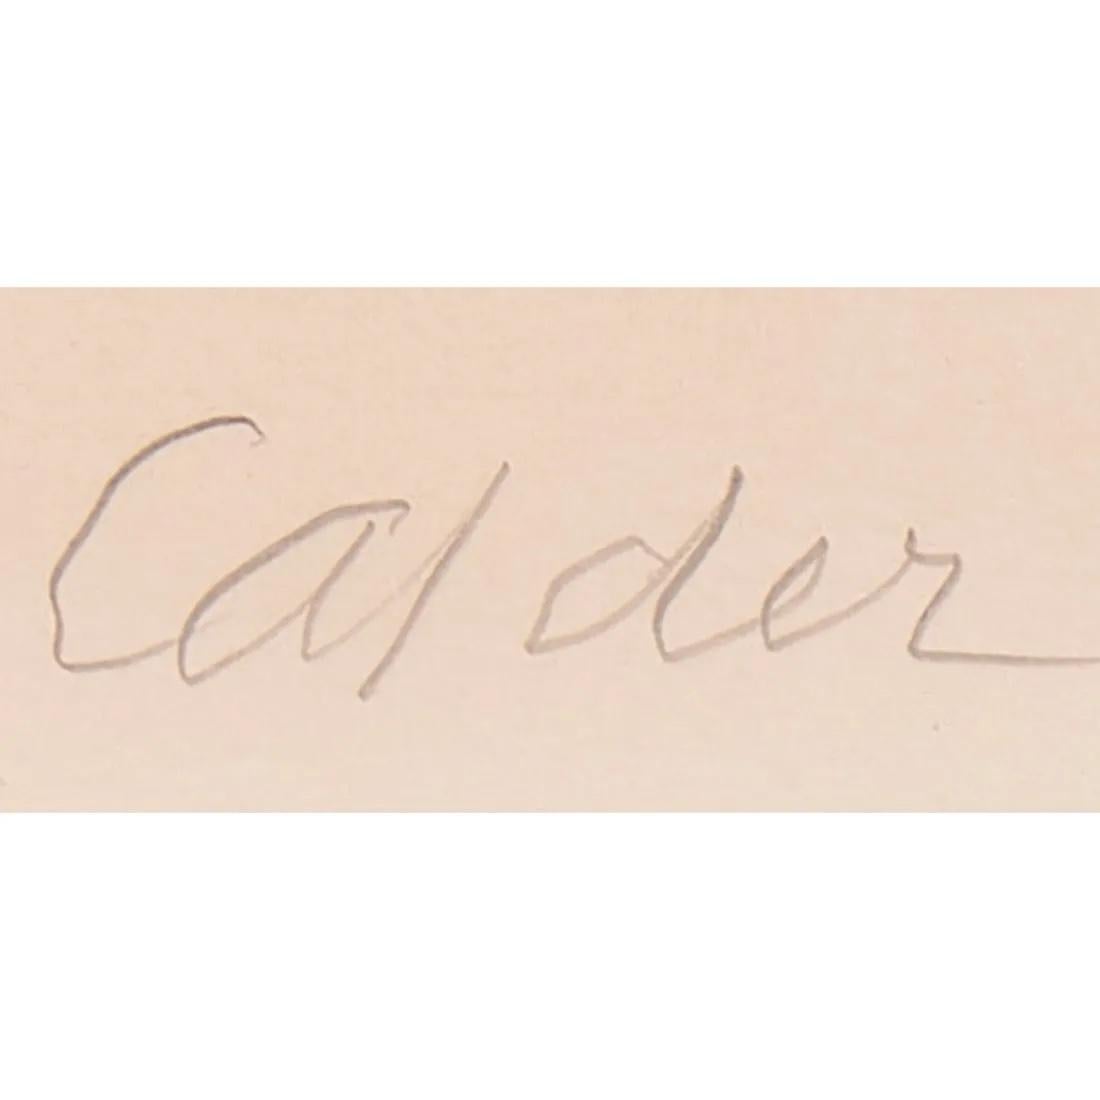 Alexander Calder (1898-1976, Amerikaner )
Die schwarze Linie
1967
Lithographie
22 1/2 x 30 1/8 in.
Auflage von 60 Stück
Bleistift signiert und nummeriert

Alexander Calder (22. Juli 1898 - 11. November 1976) war ein amerikanischer Bildhauer, der